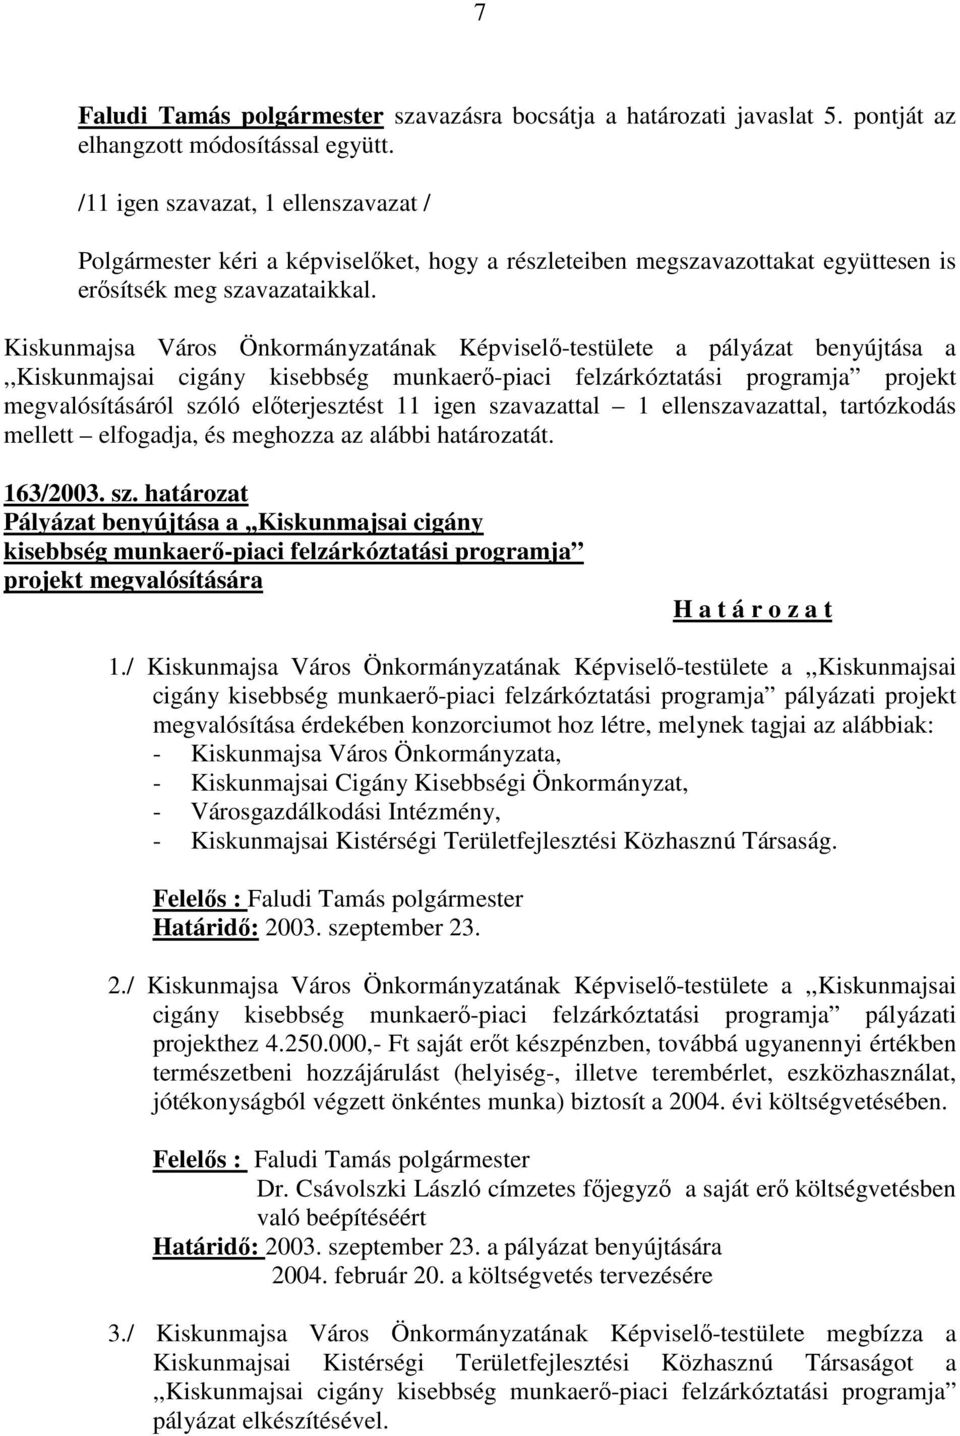 Kiskunmajsa Város Önkormányzatának Képviselő-testülete a pályázat benyújtása a,,kiskunmajsai cigány kisebbség munkaerő-piaci felzárkóztatási programja projekt megvalósításáról szóló előterjesztést 11